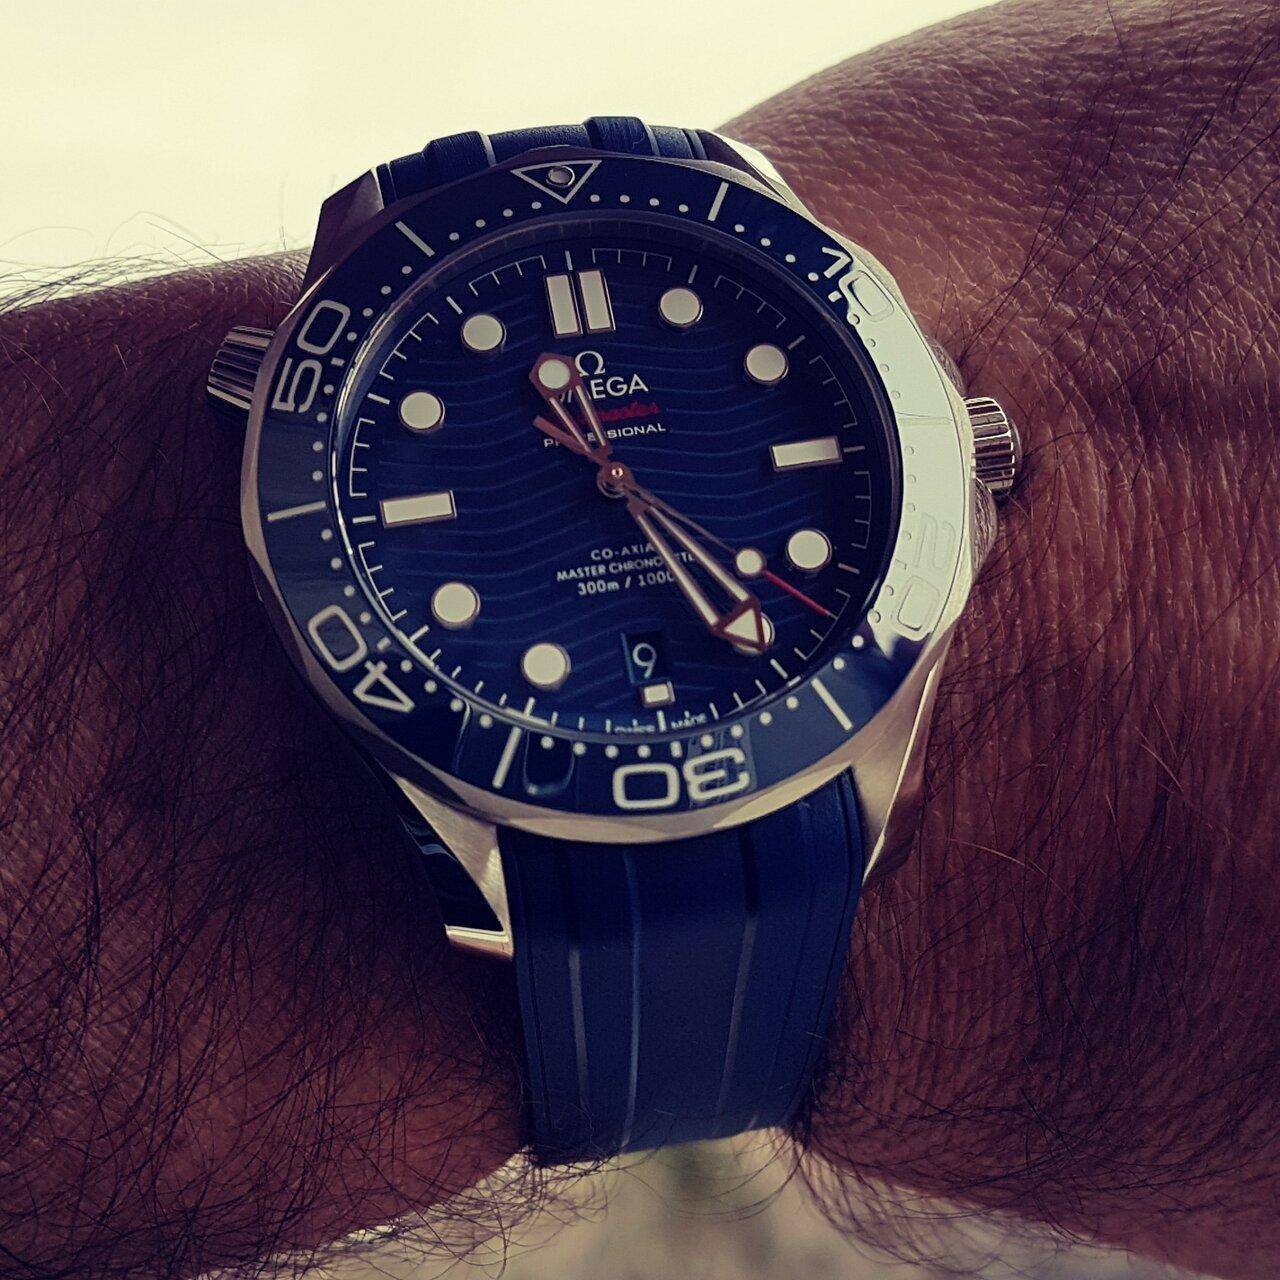 Ω Seamaster Professional Diver 300M Co-Axial Master Chronometer 42mm Cal. 8800 Blue (2).jpg